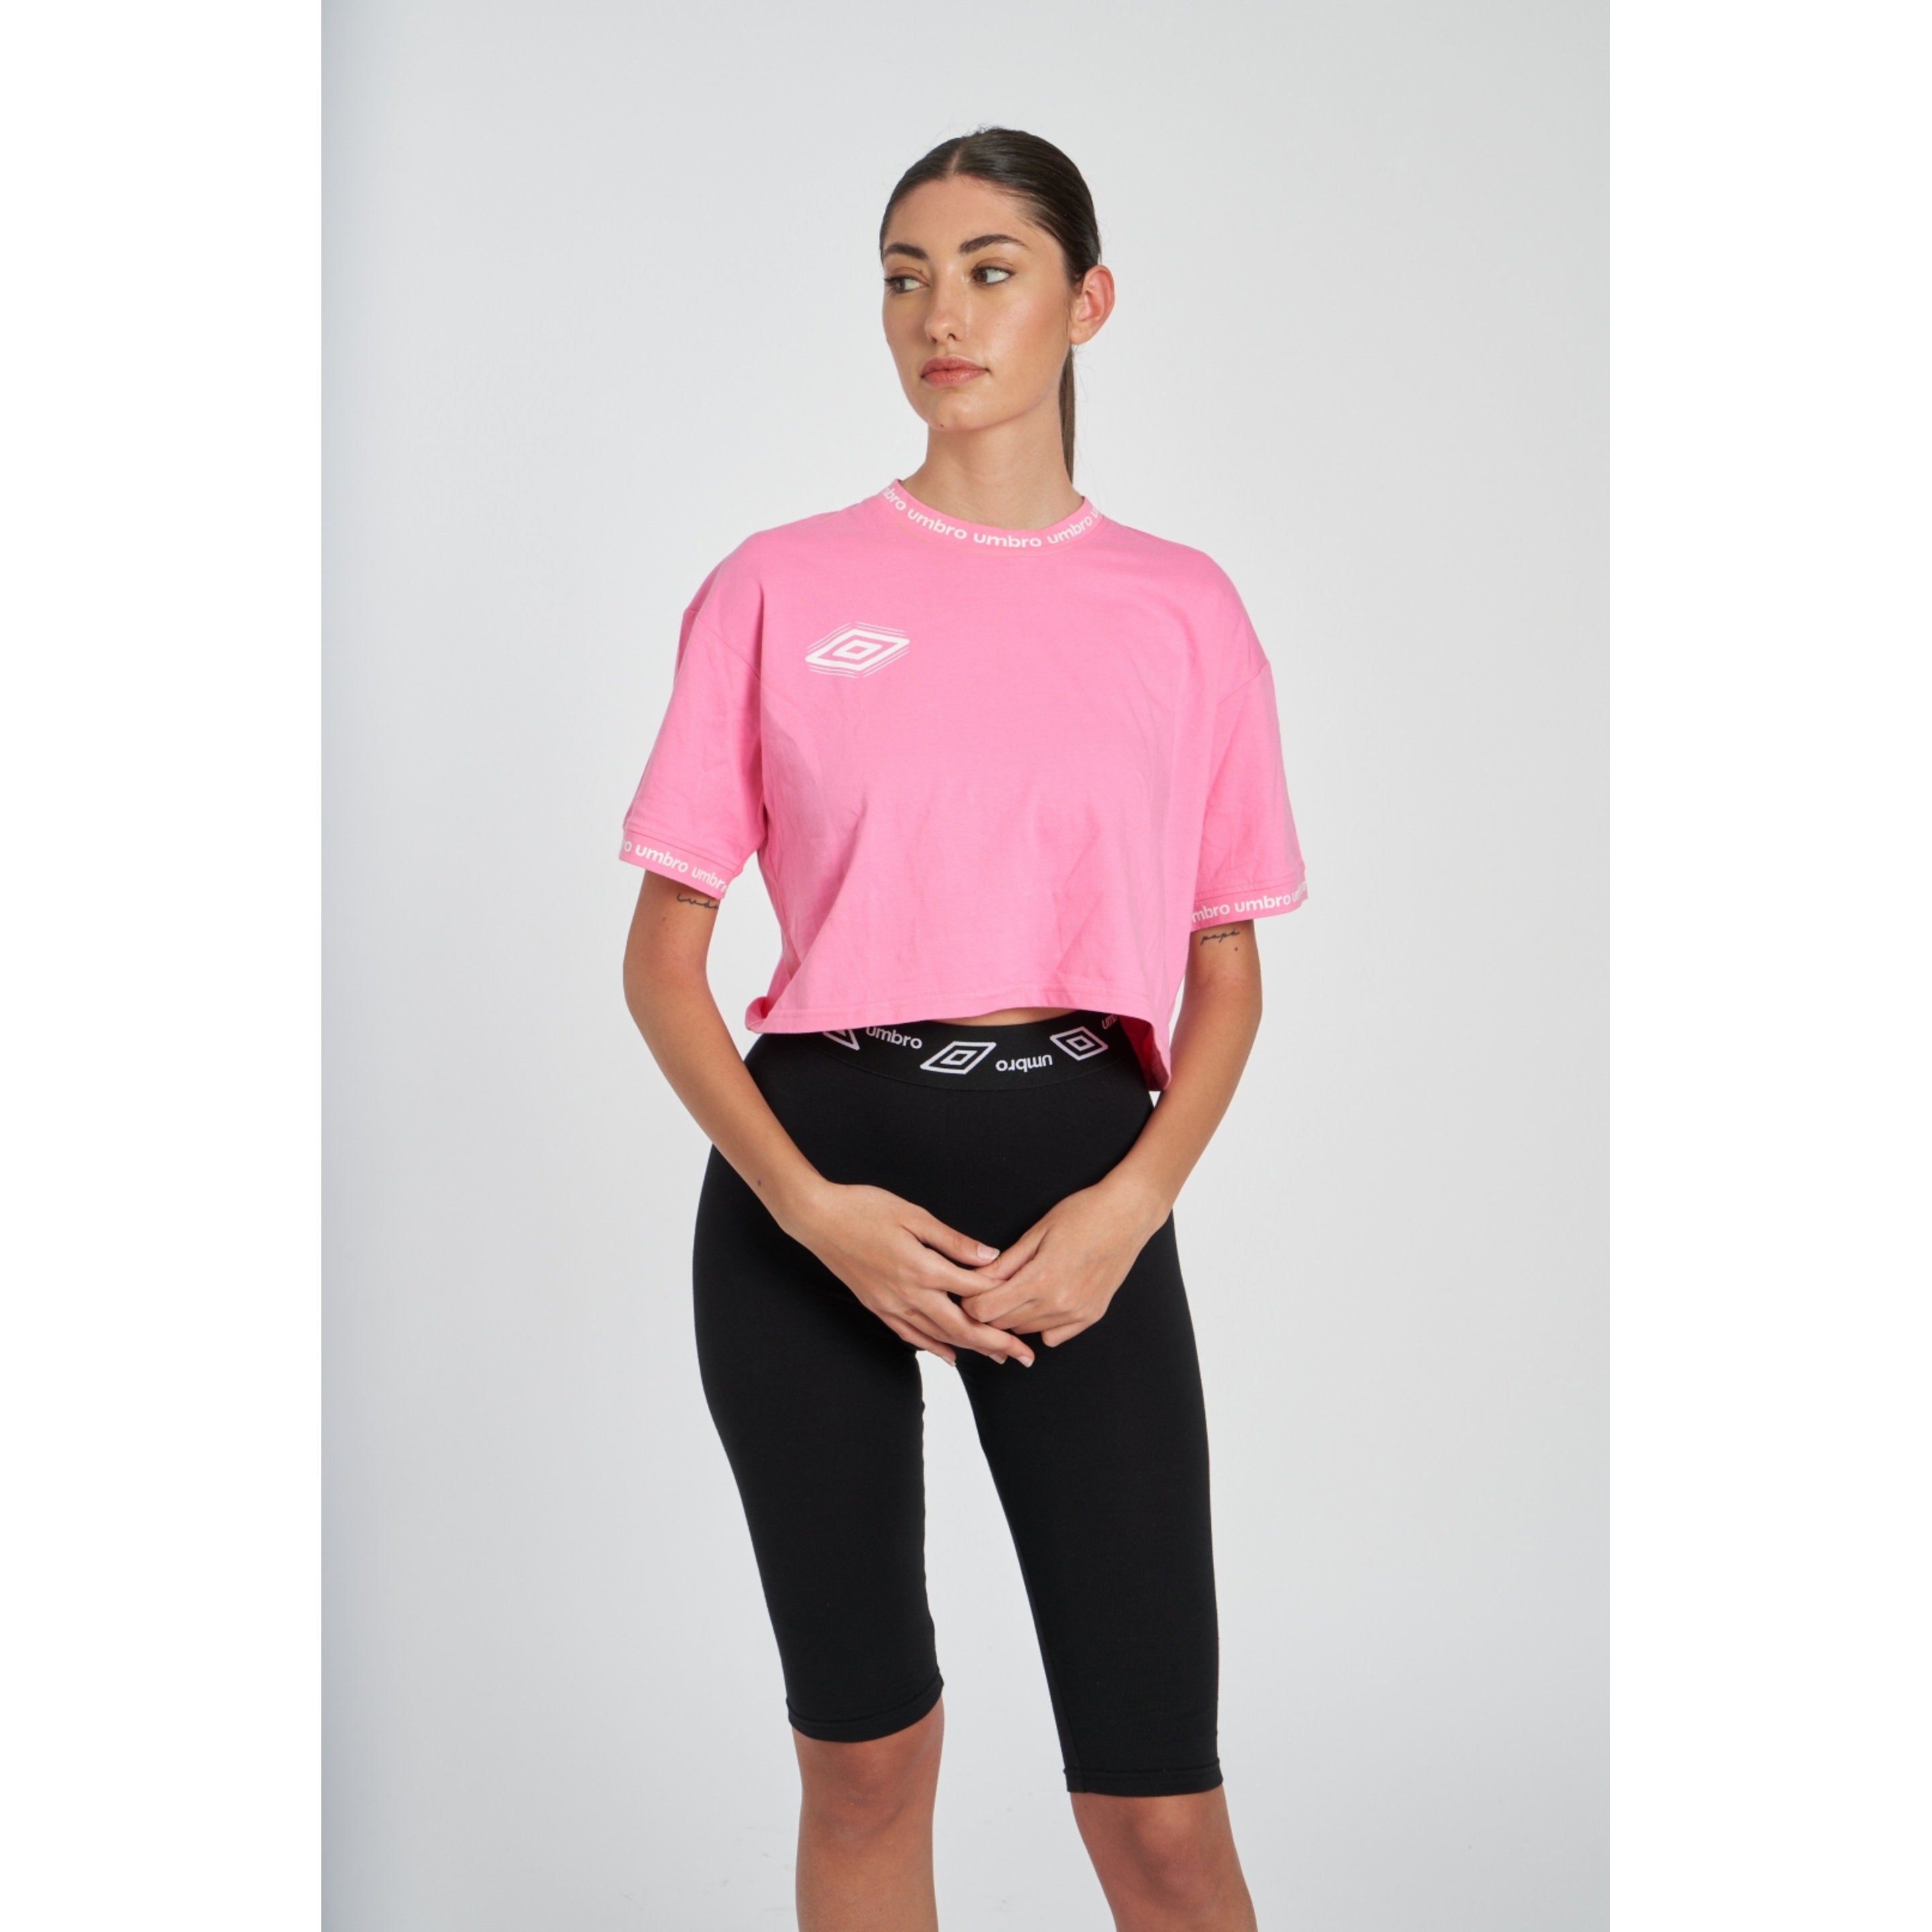 Camiseta Umbro Dorado - rosa - 